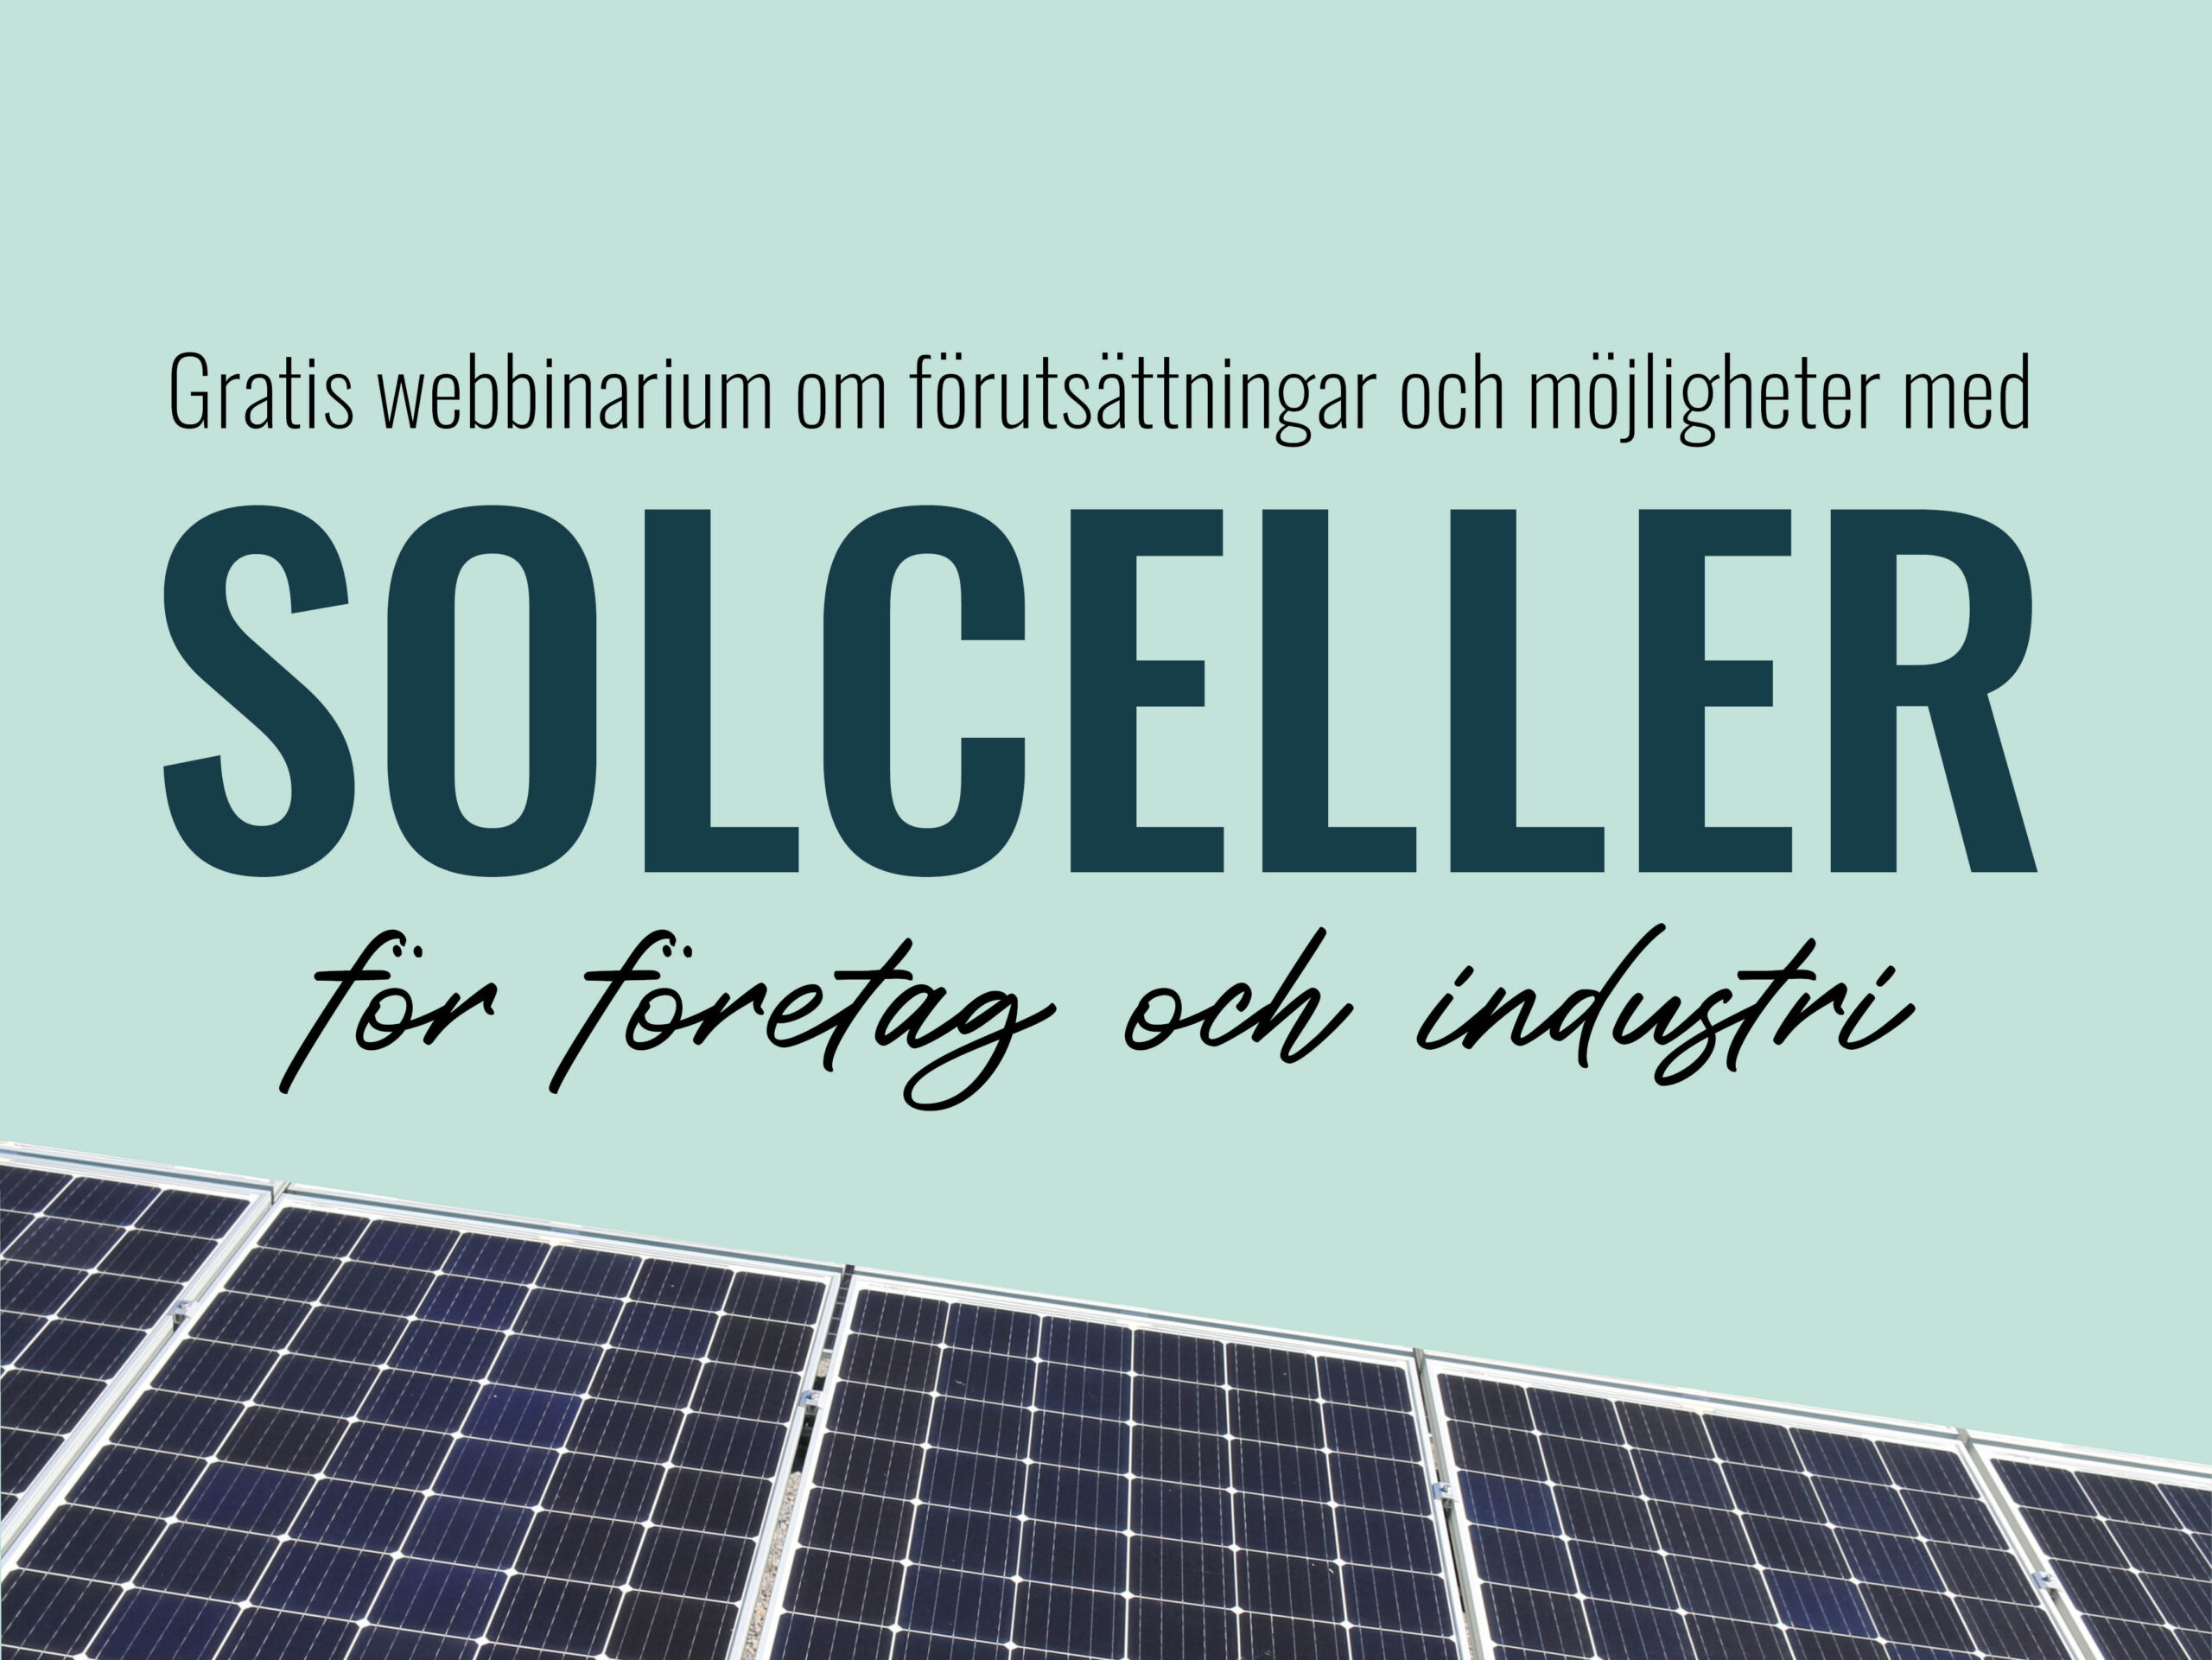 You are currently viewing Webbinarium: Solceller för företag och industri